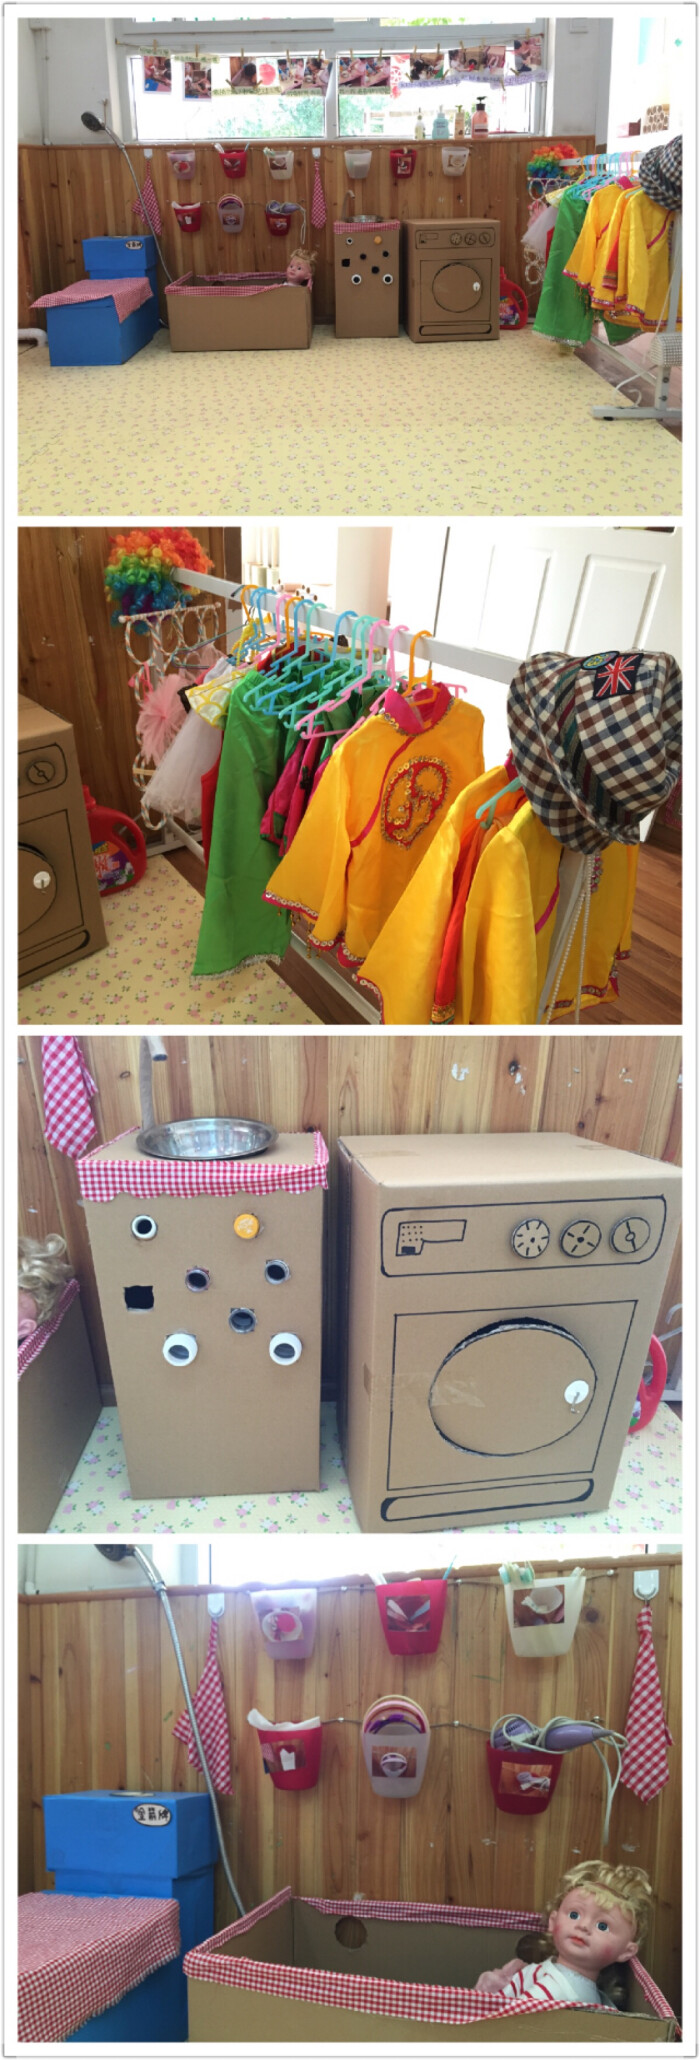 画室纸箱废物利用幼儿园走廊装饰幼儿园环创环境创设幼儿园区角幼儿园